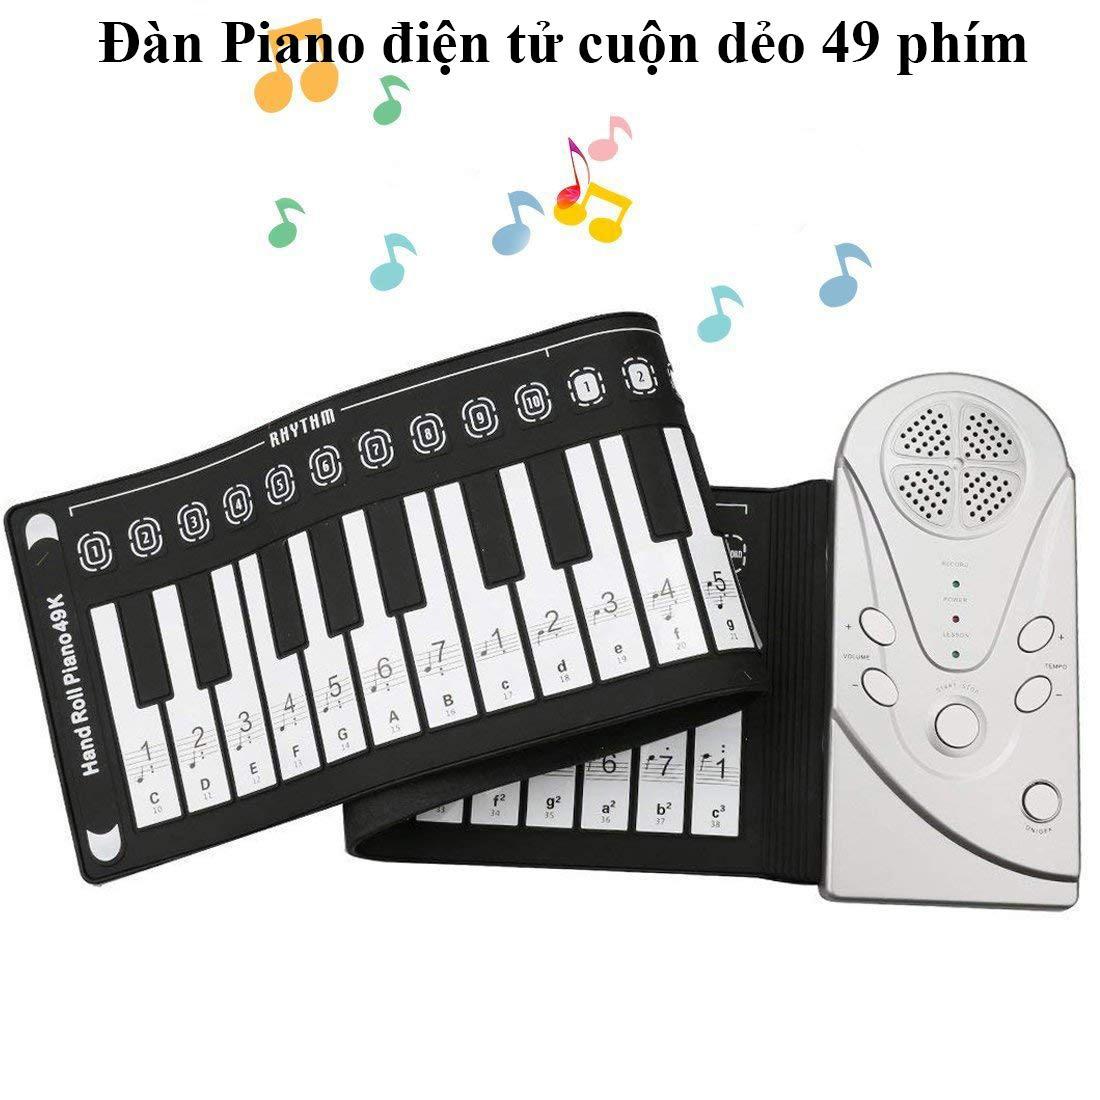 Đàn trẻ em điện tử, Đàn Piano Điện Tử, Đàn piano điện tử bàn phím cuộn dẻo 49 keys (Trắng)....